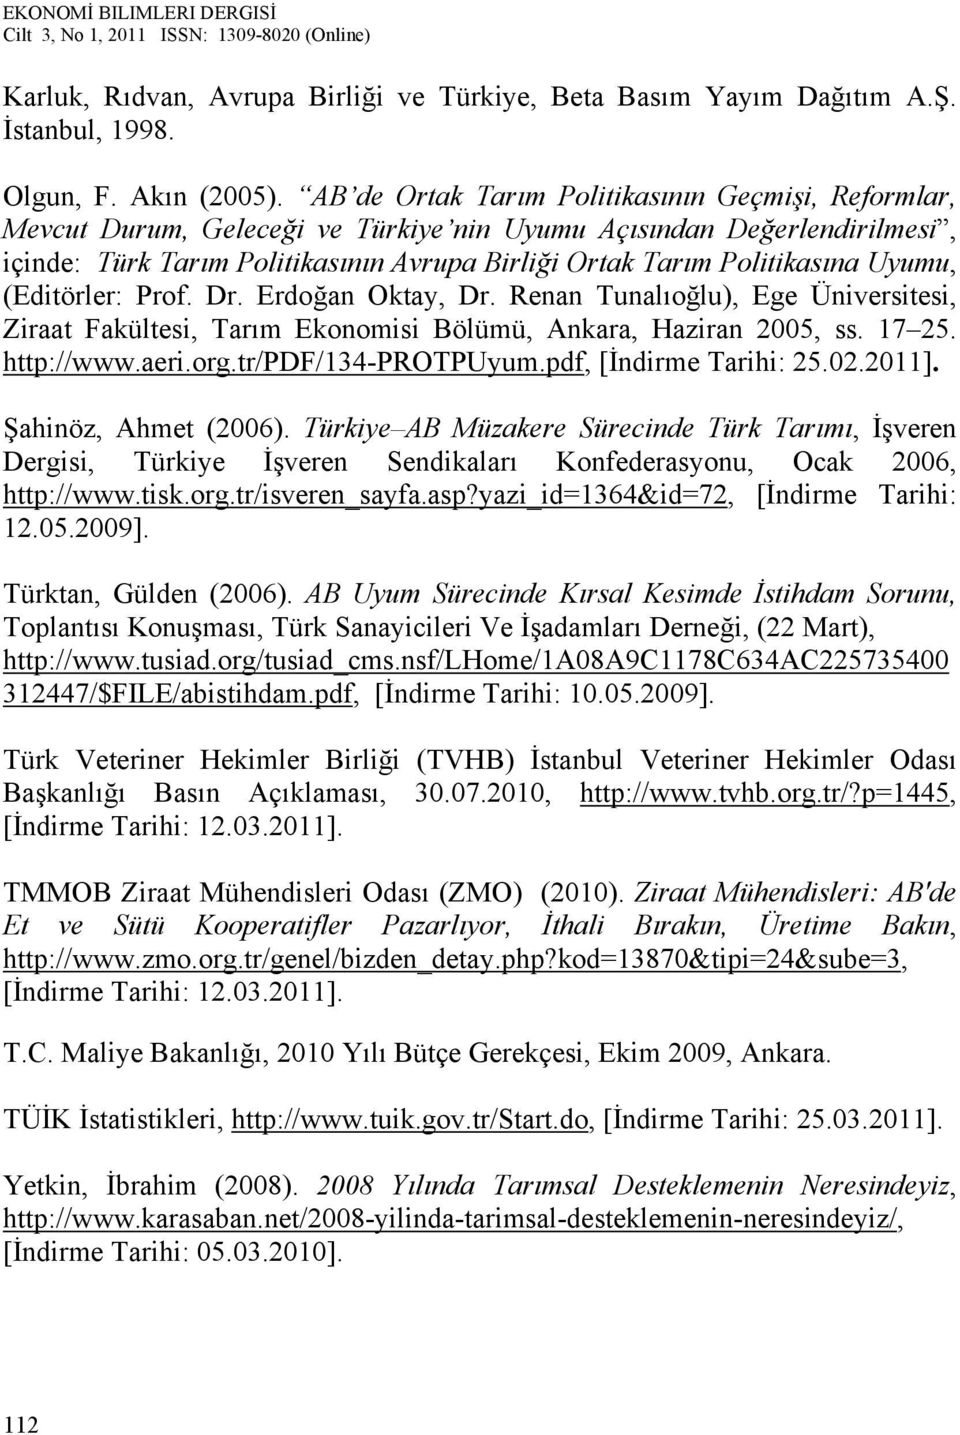 Uyumu, (Editörler: Prof. Dr. Erdoğan Oktay, Dr. Renan Tunalıoğlu), Ege Üniversitesi, Ziraat Fakültesi, Tarım Ekonomisi Bölümü, Ankara, Haziran 2005, ss. 17 25. http://www.aeri.org.